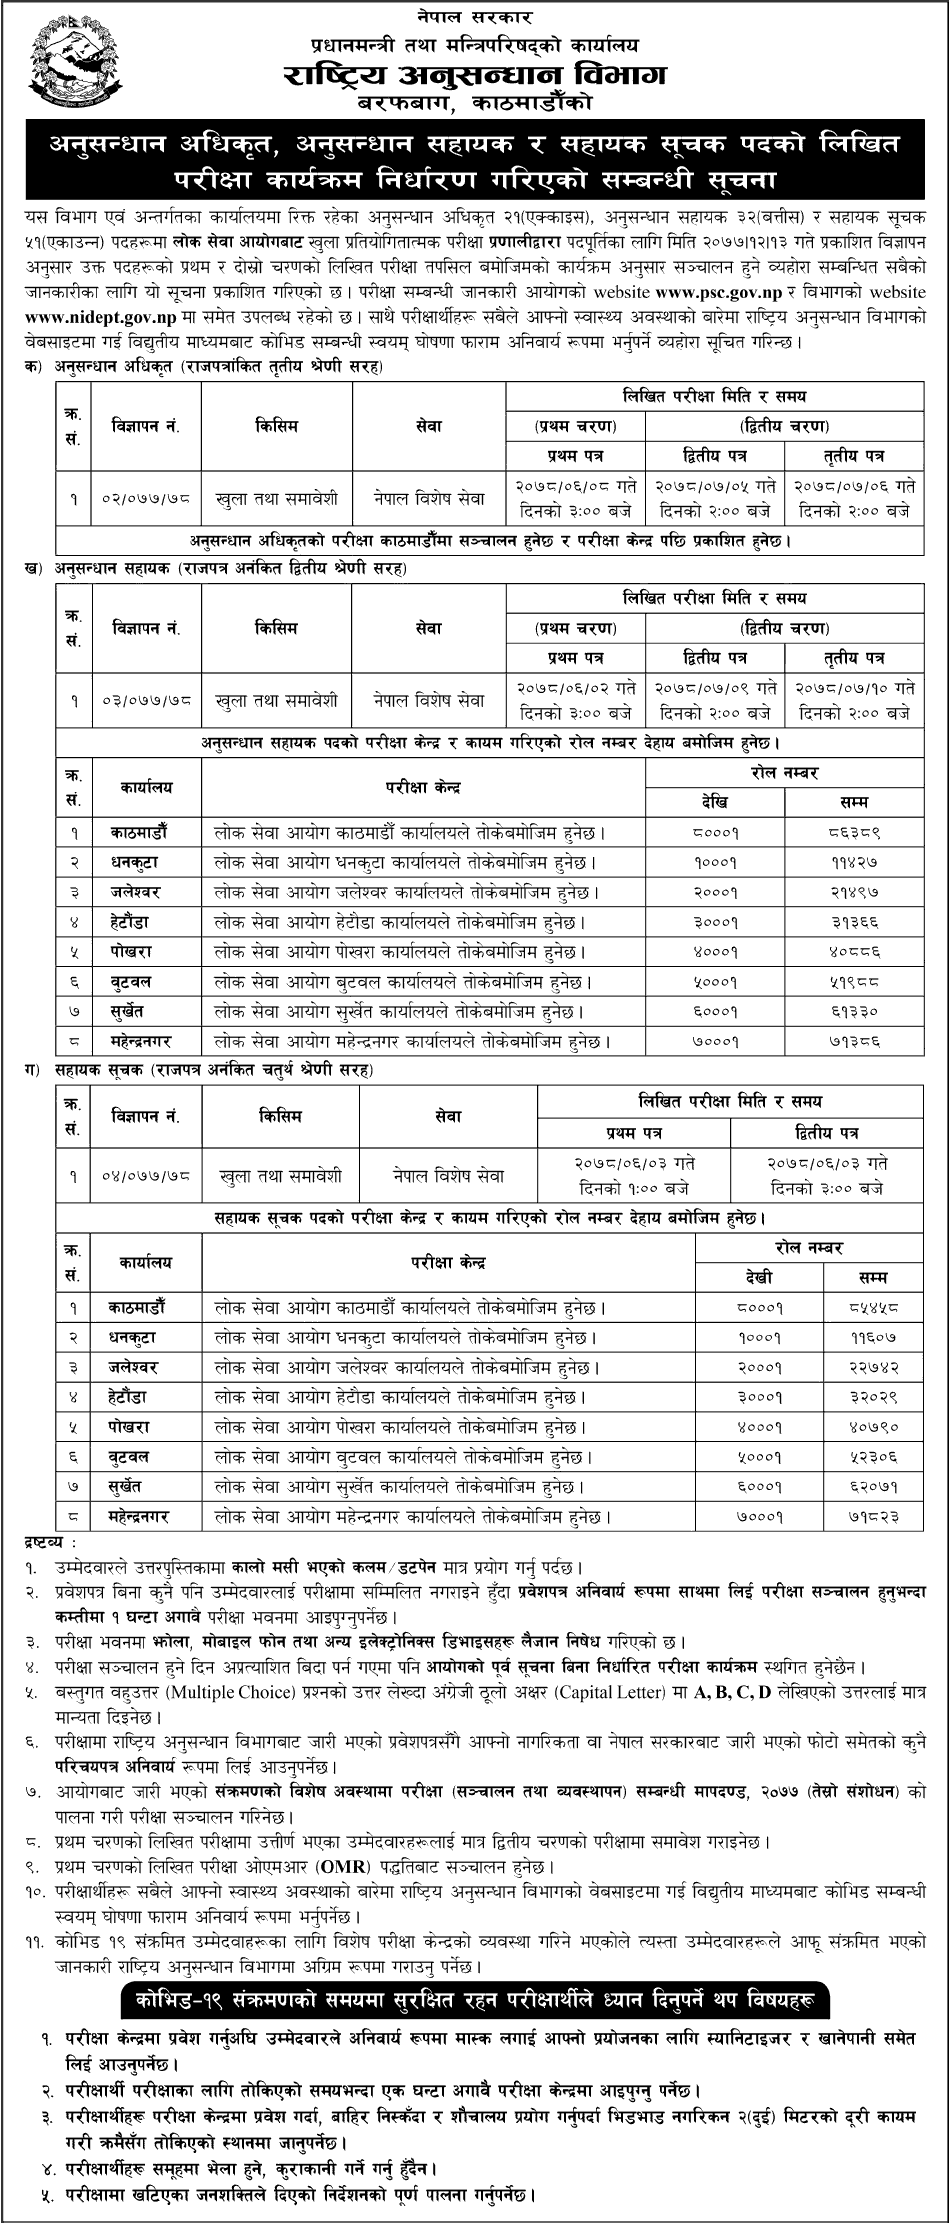 Rastriya Anusandhan Bibhag Written Exam Center of Anusandhan Adhikrit, Anusandhan Sahayak, Shayak Suchak